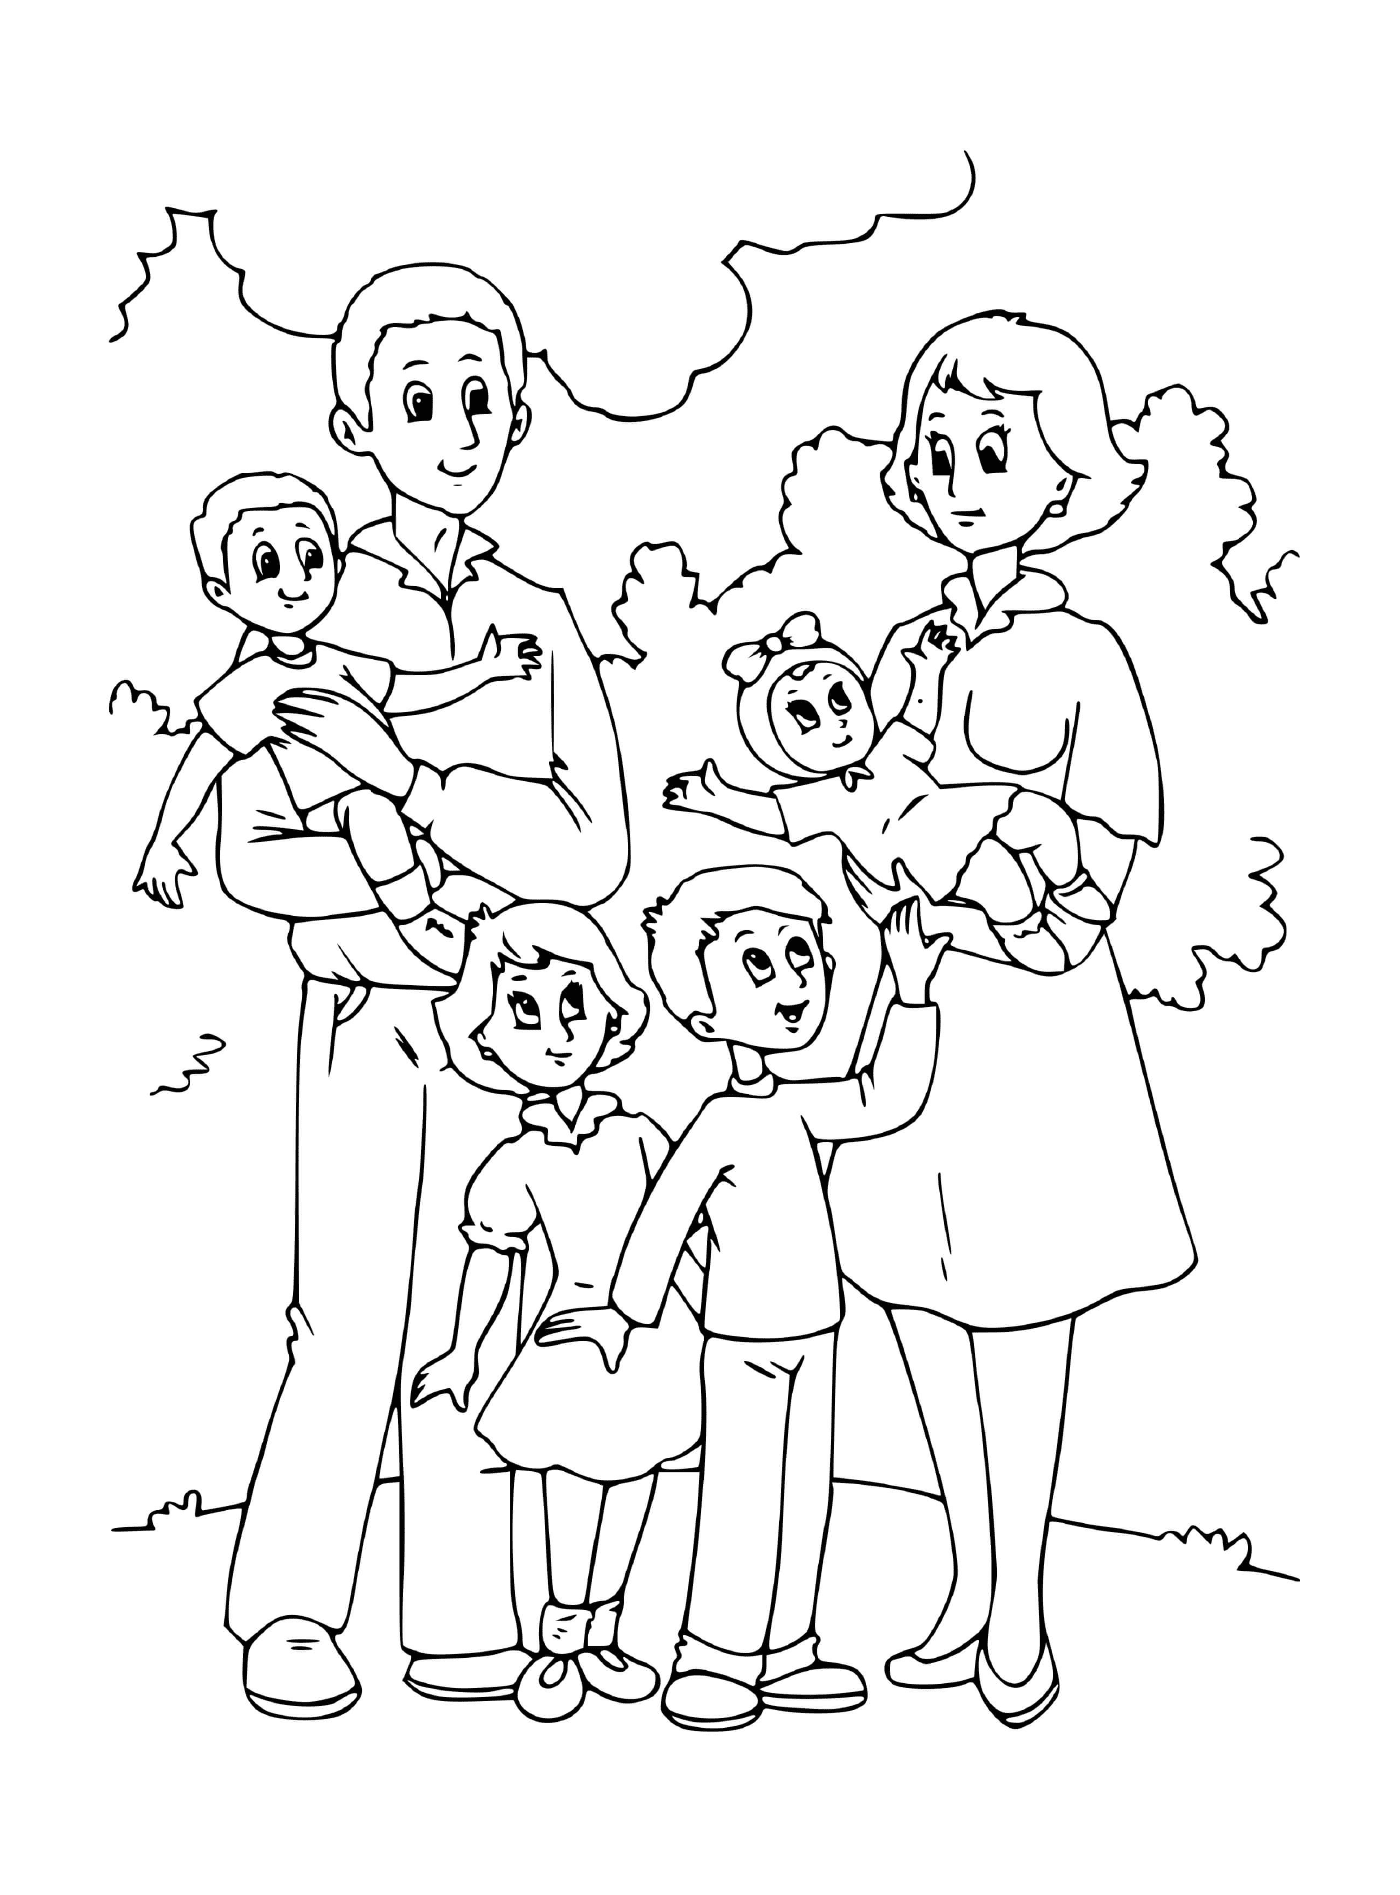  Семья с несколькими детьми и их родителями 